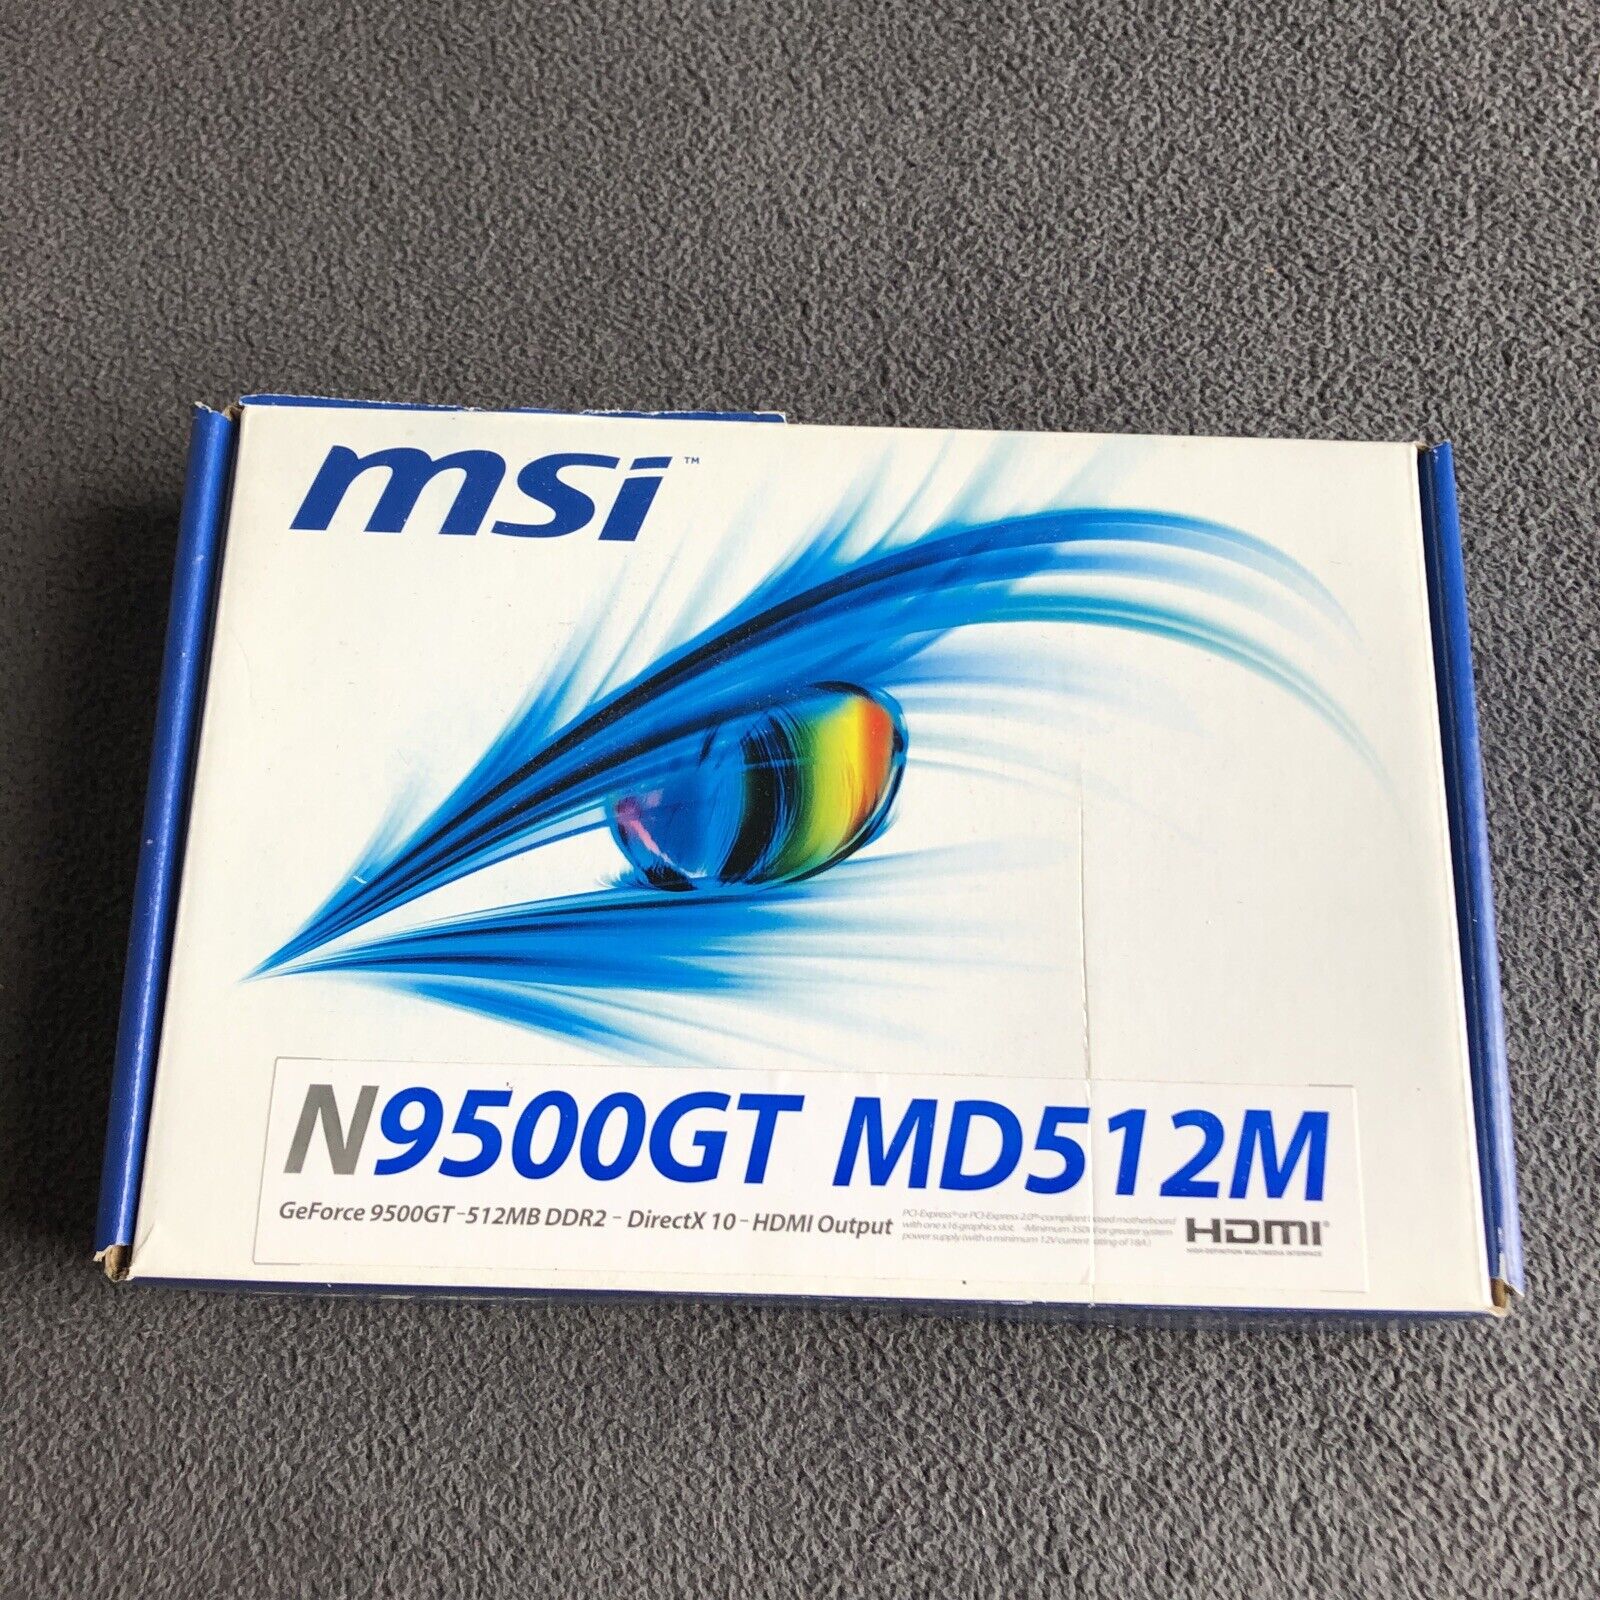 MSI N9500GT MD512M Geforce 9500GT DDR2 512MB Video Card - NIB